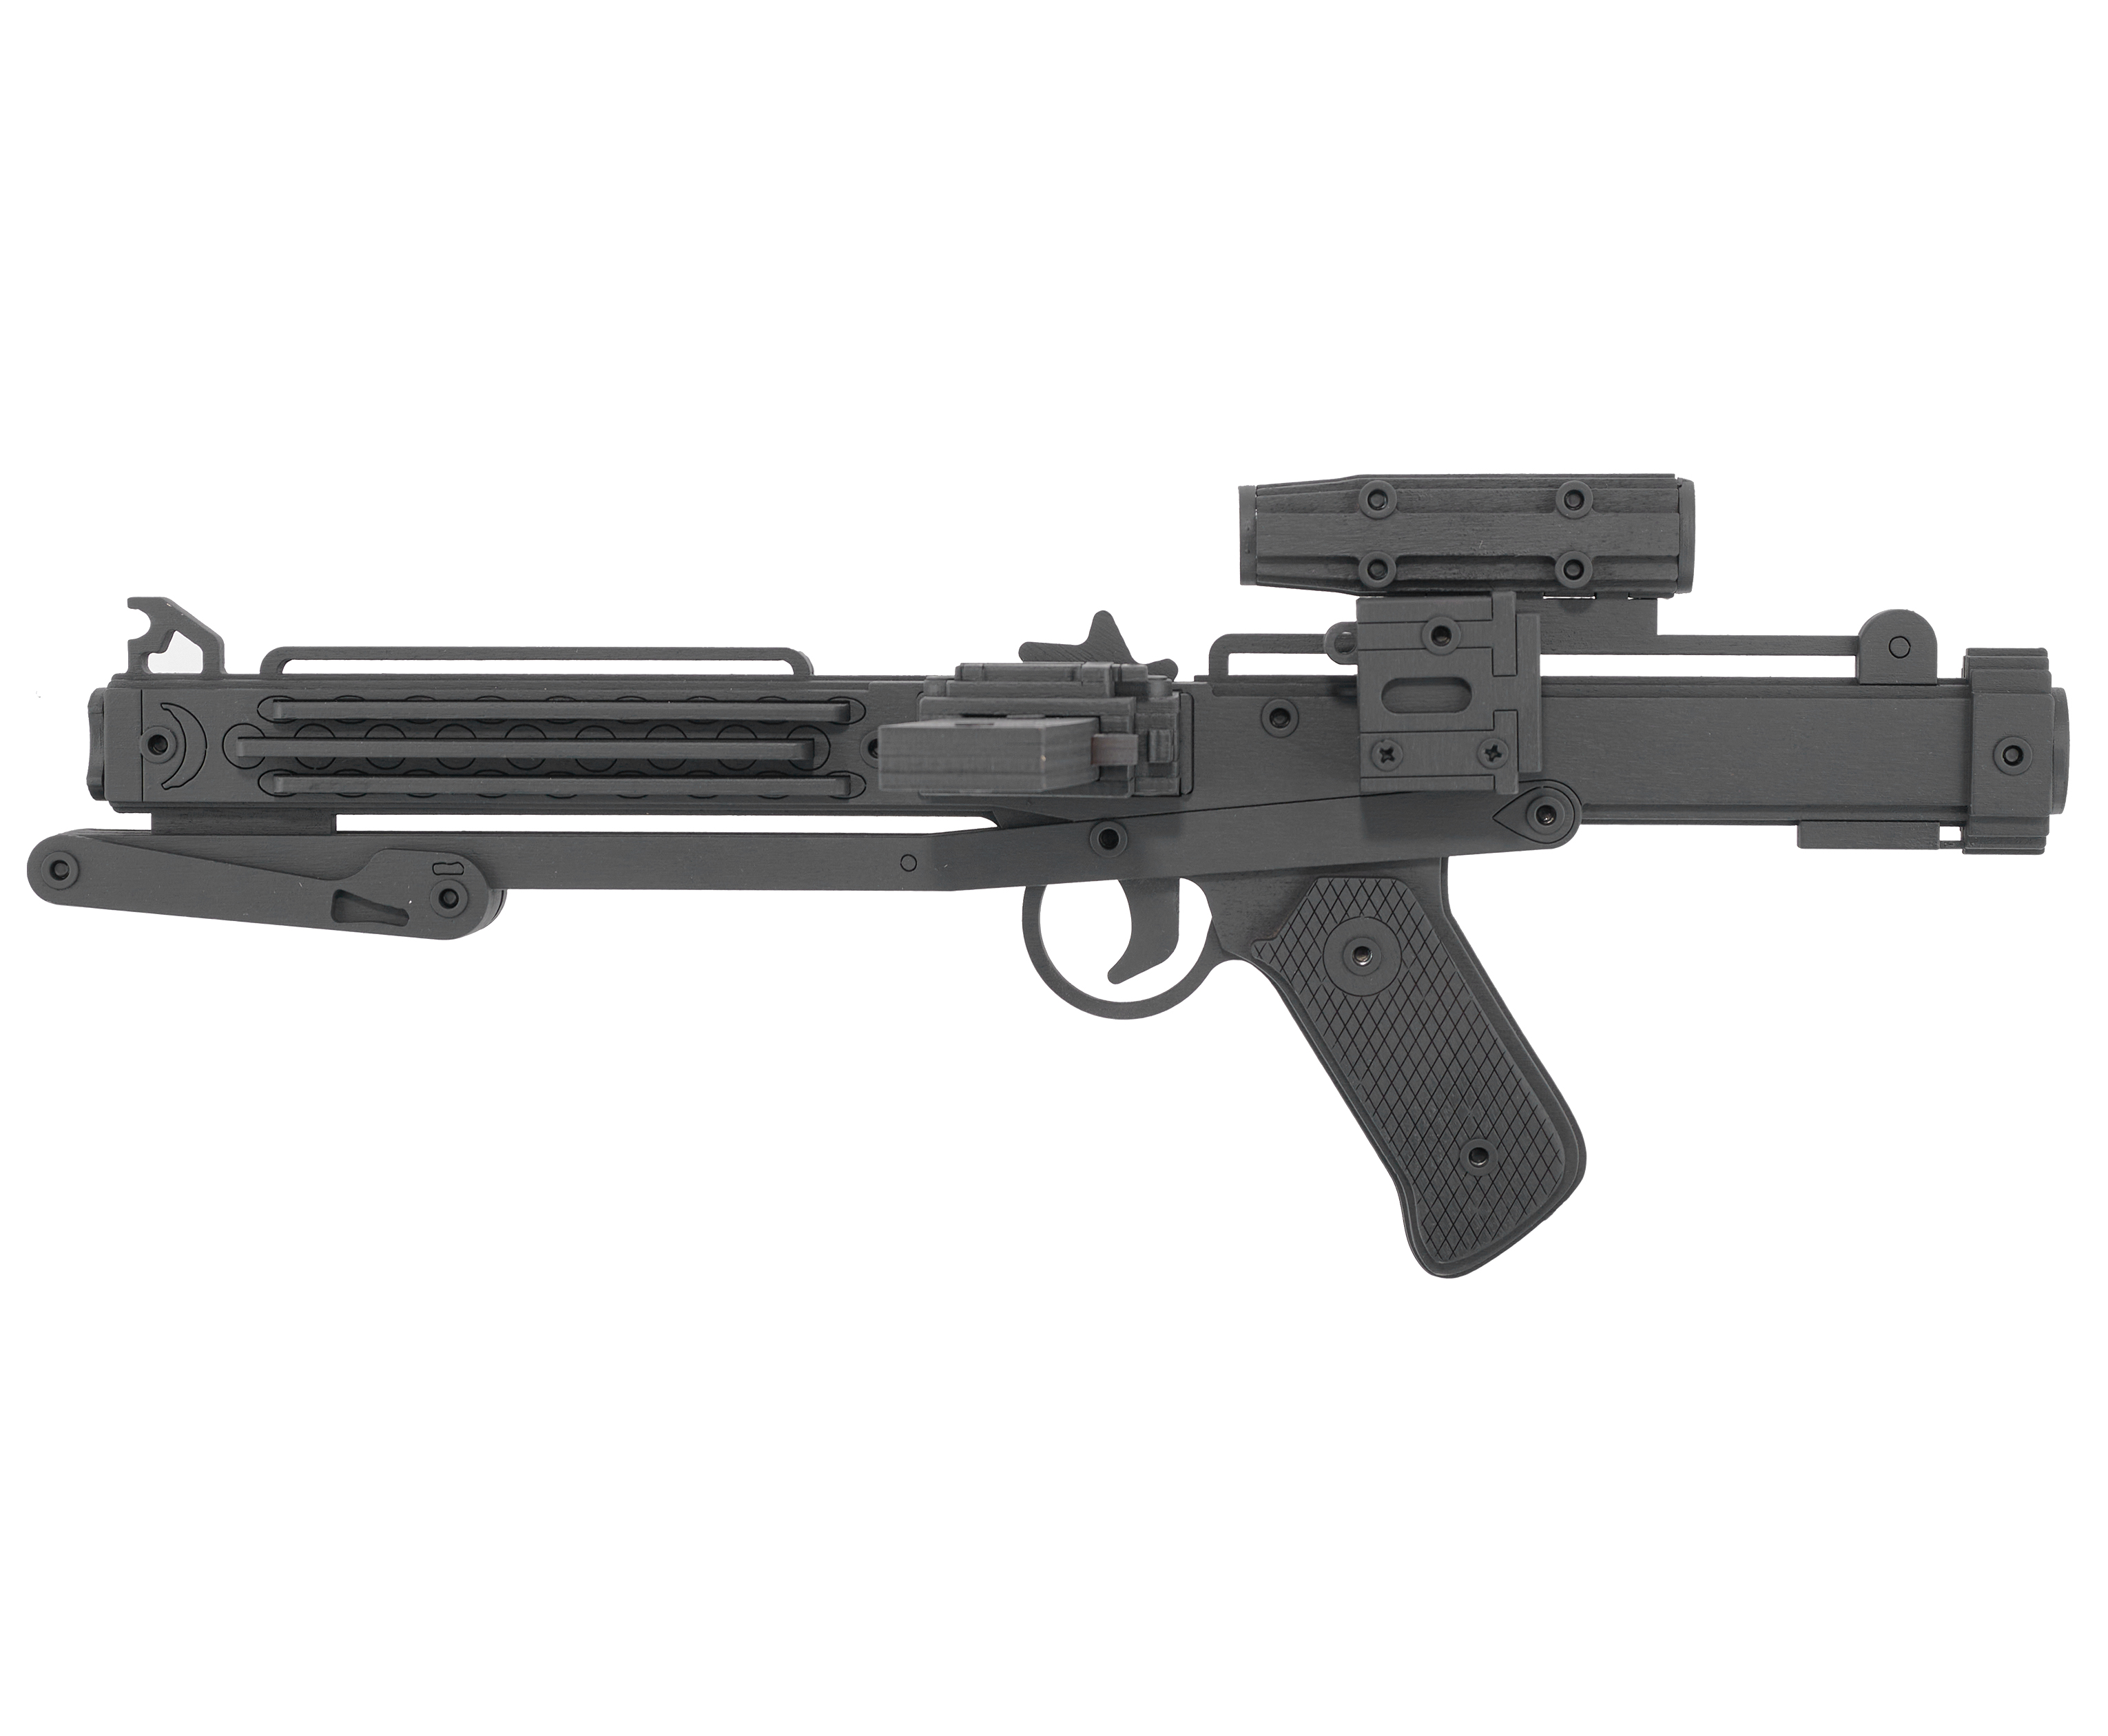 Резинкострел игрушечный Arma toys лазерная винтовка E-11 макет, Star Wars, AT011 резинкострел arma toys автомат ак 12 макет калашников at039